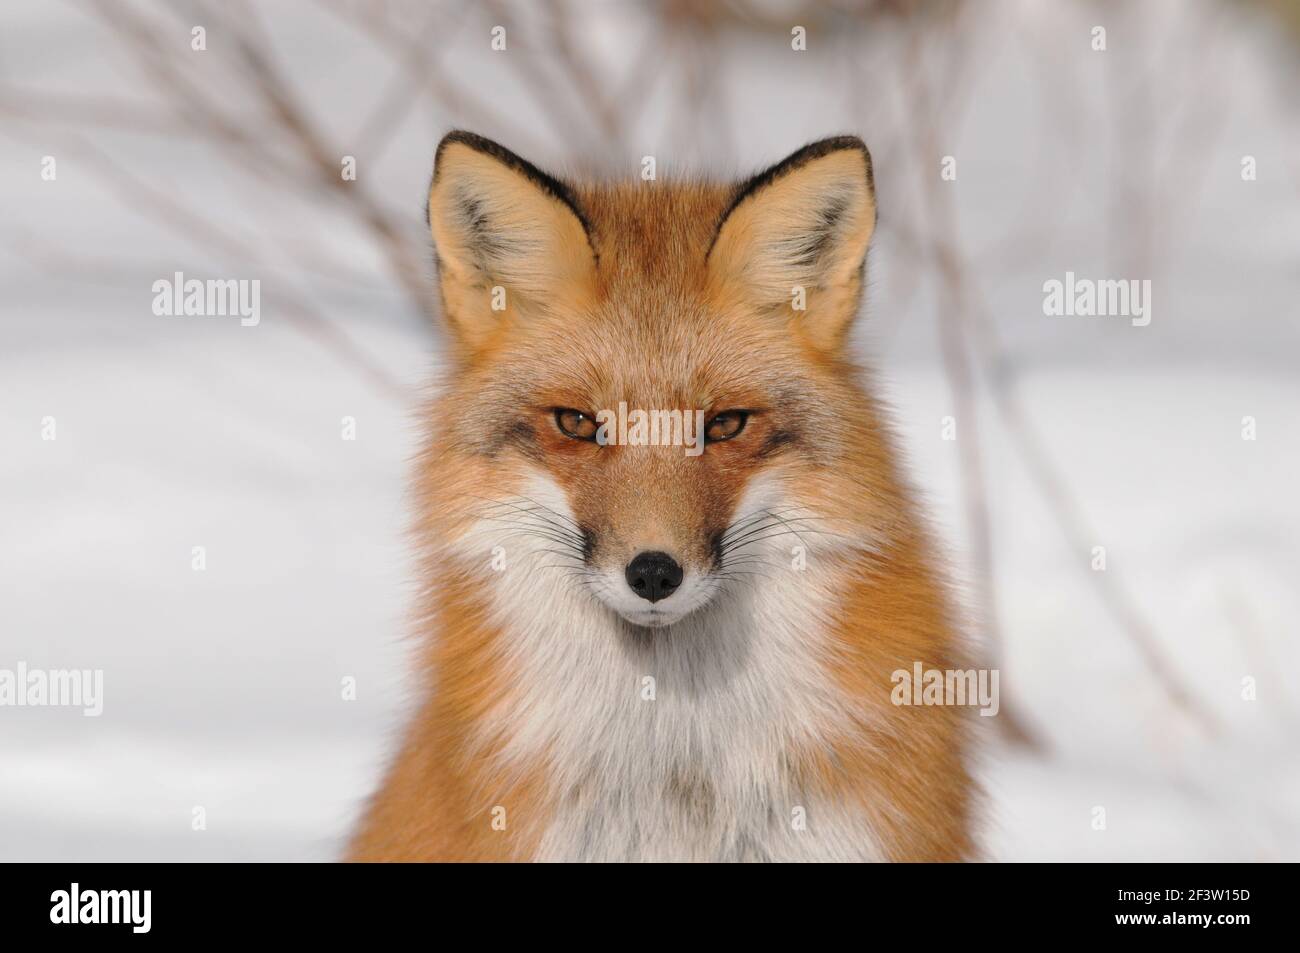 Foto in volpe rossa vista ravvicinata del profilo guardando la fotocamera nella stagione invernale nel suo ambiente con fondo nevoso. Immagine FOX. Immagine. Verticale. Foto Stock